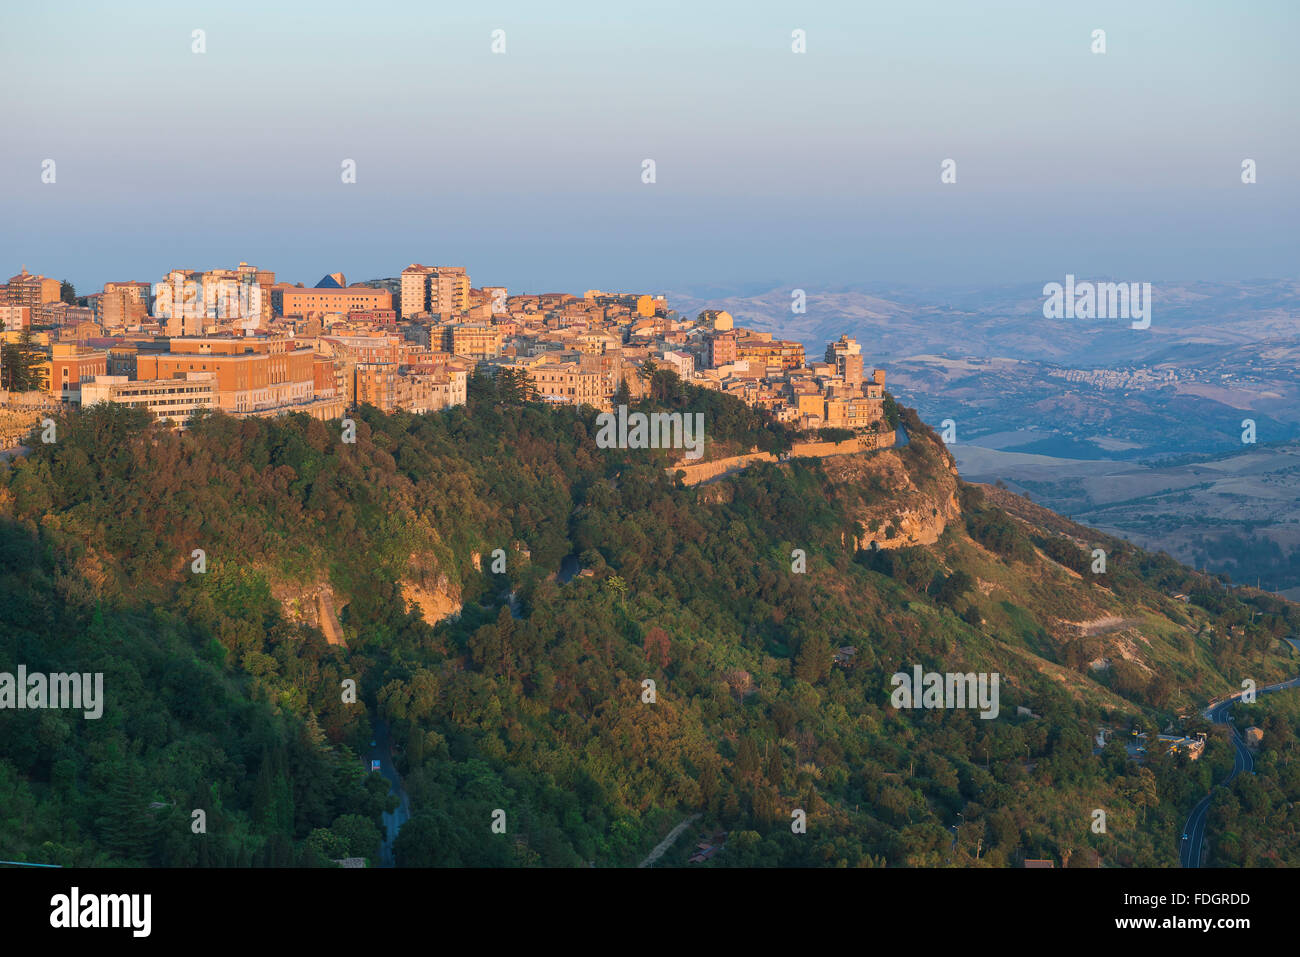 Paysage de la Sicile, vue sur le lever du soleil sur la ville historique d'Enna - une grande ville colline située au centre de l'île de Sicile. Banque D'Images